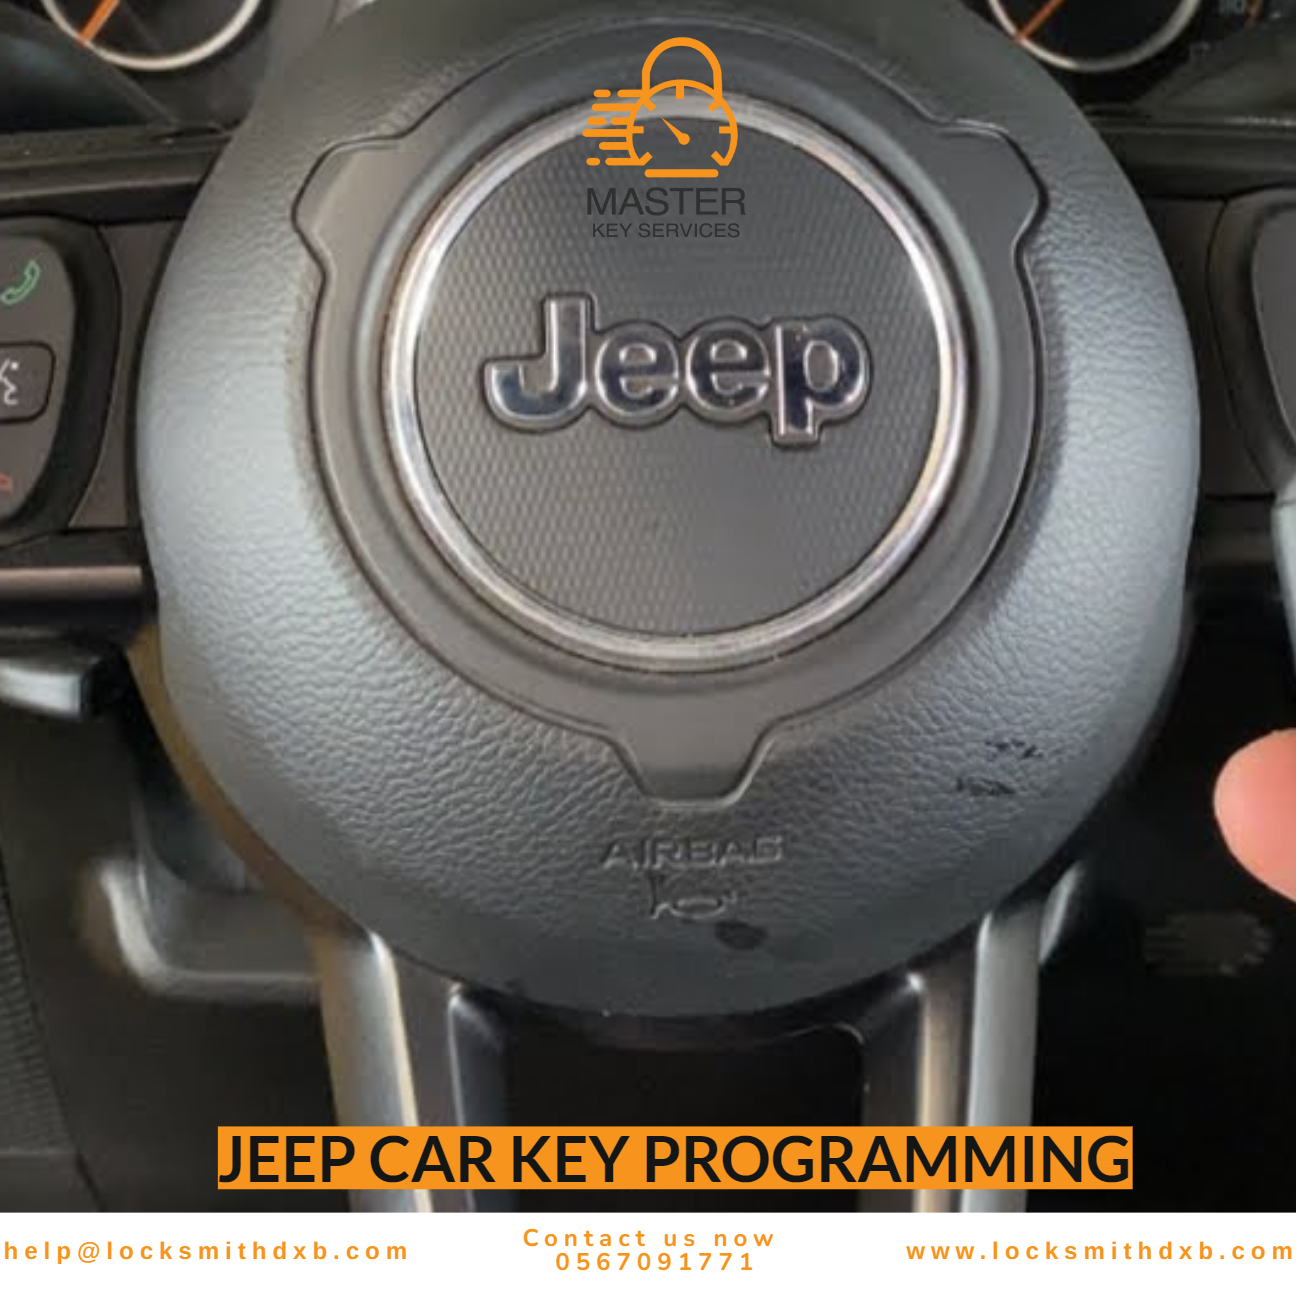 JEEP car key programming